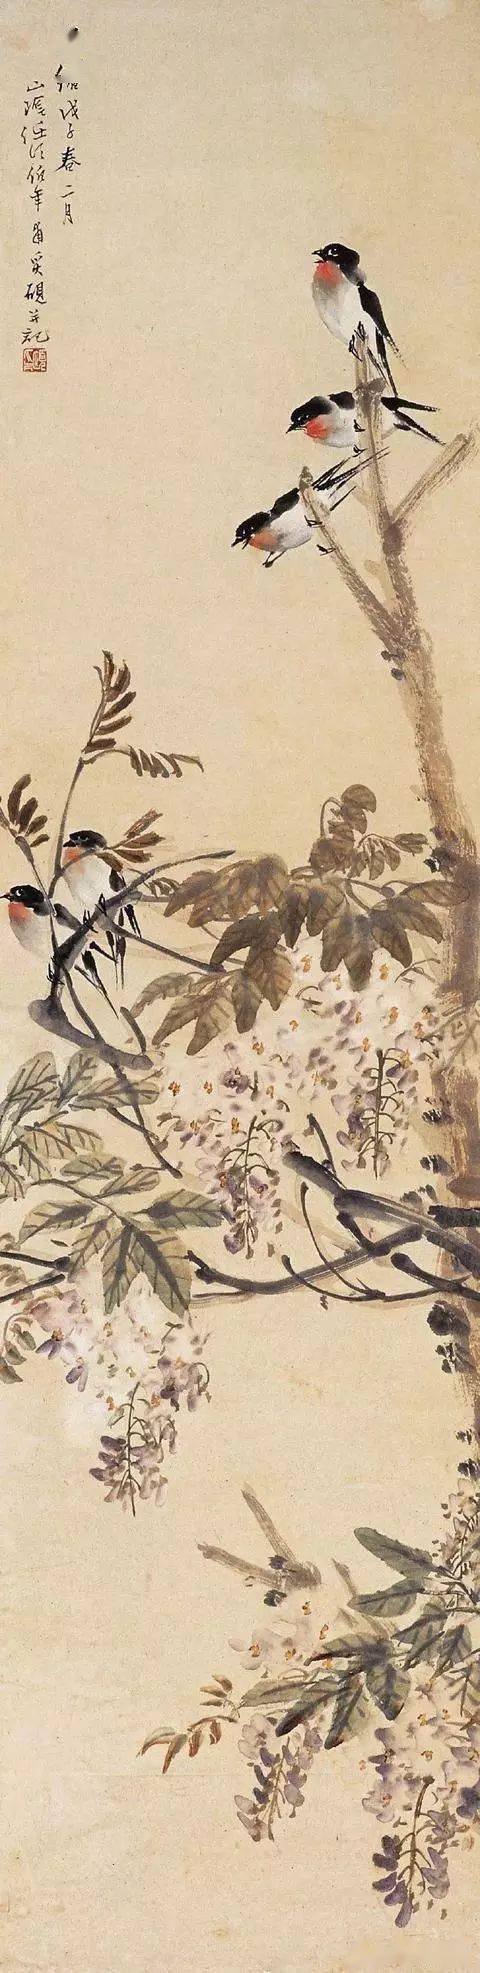 任伯年的花鸟画,总是把花与鸟连在一起,禽鸟显得很突出,花卉有时只作